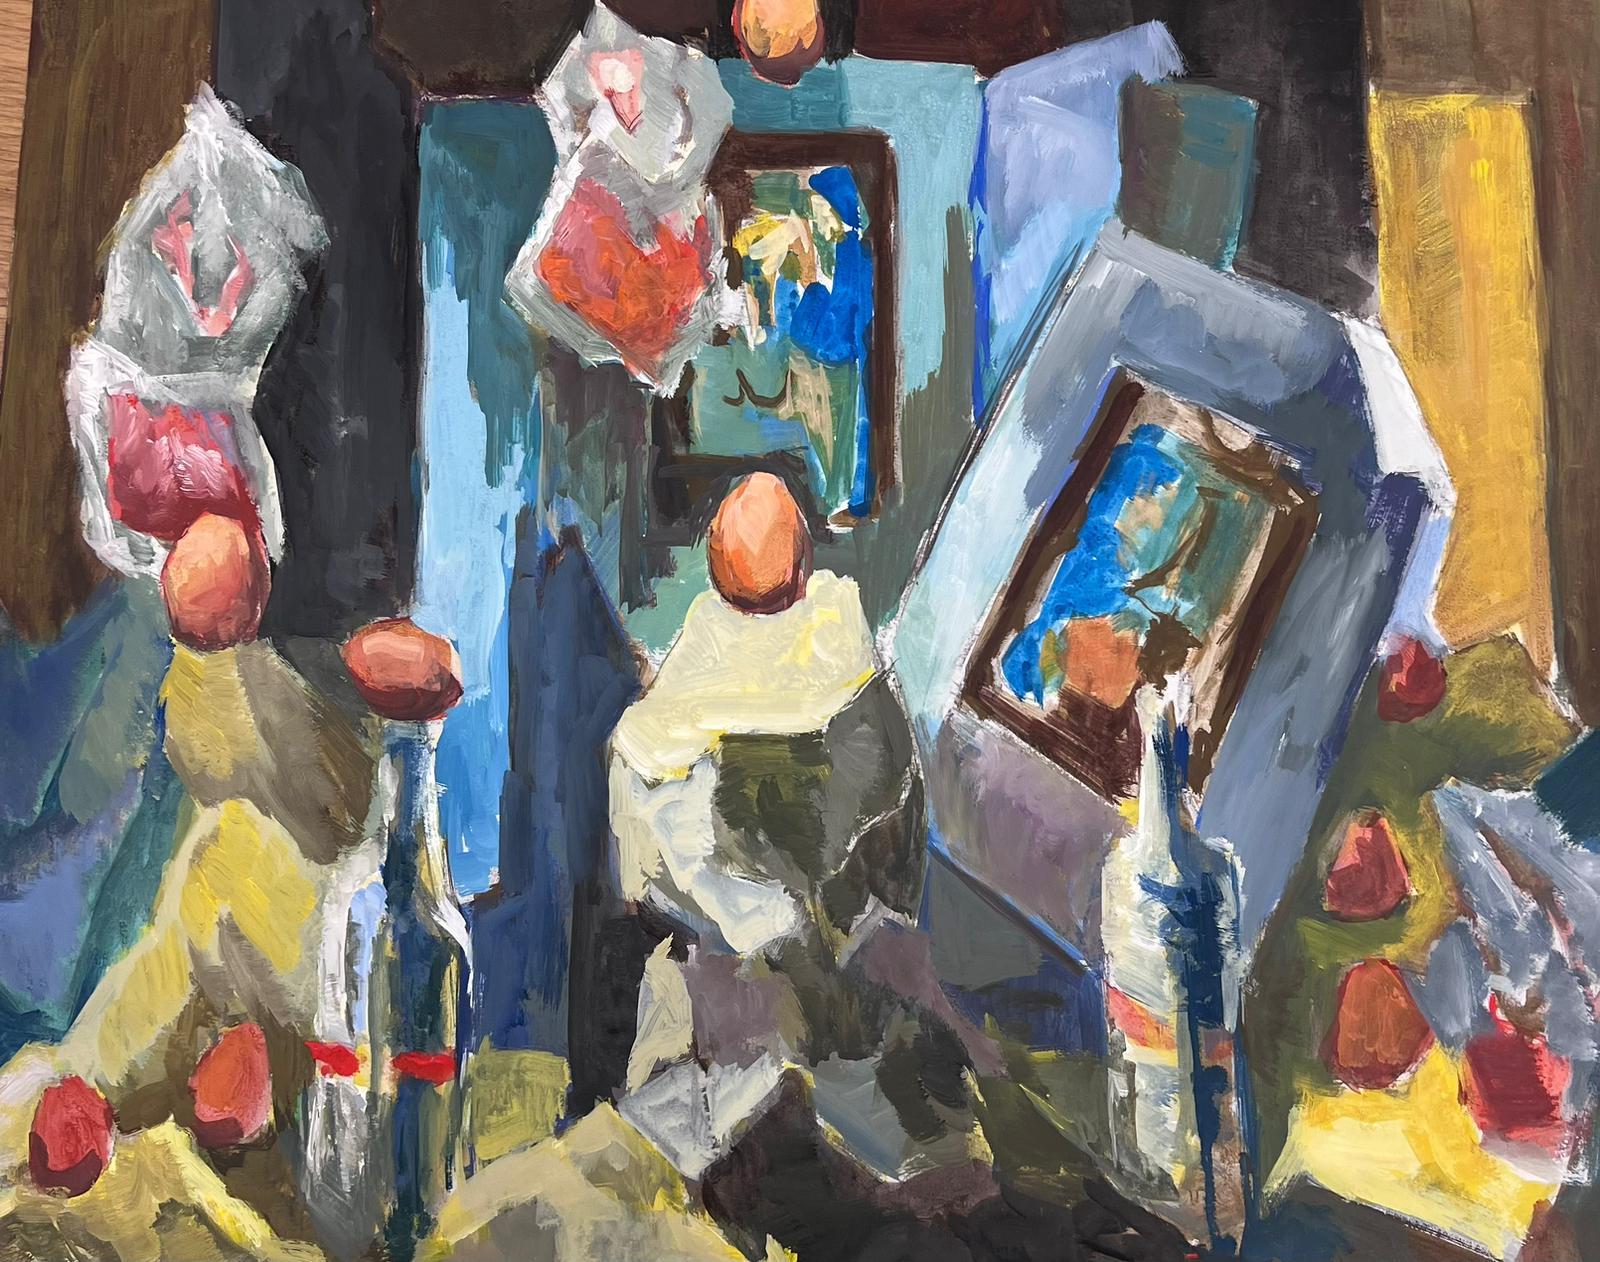 Stilleben-Objekte
von Guy Nicod
(Französisch 1923 - 2021)
Öl auf Künstlerpapier, ungerahmt
Gemälde : 19,5 x 24 Zoll
Herkunft: Künstlernachlass, Frankreich
Zustand: sehr guter und gesunder Zustand